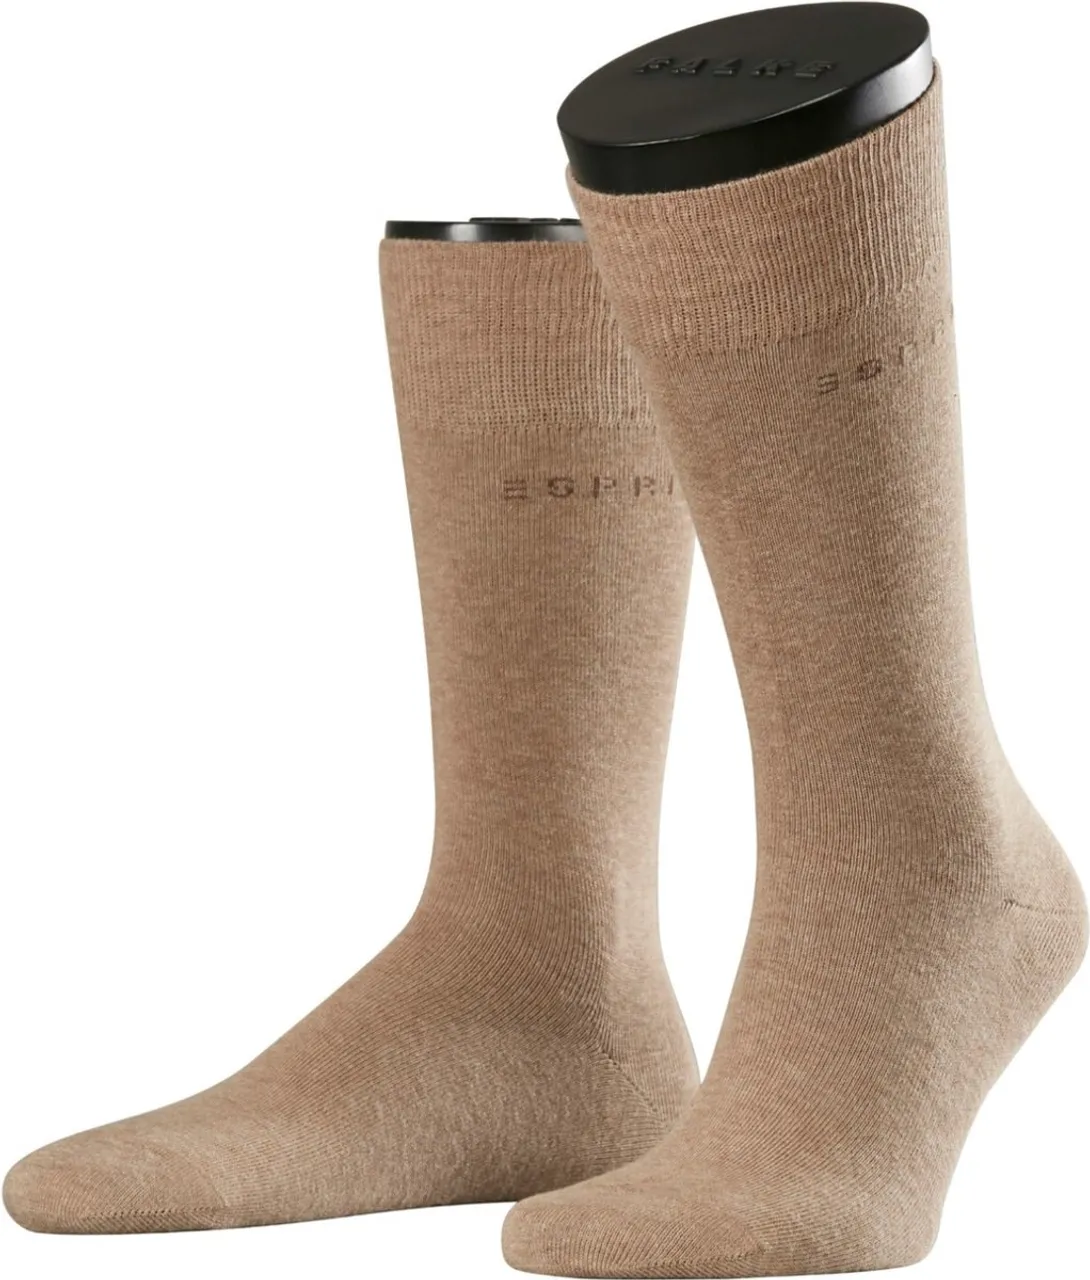 Esprit Basic Uni 2-Pack zacht biologisch zonder motief ondoorzichtig mid-rise comfortabel set Katoen Multipack Bruin Heren sokken